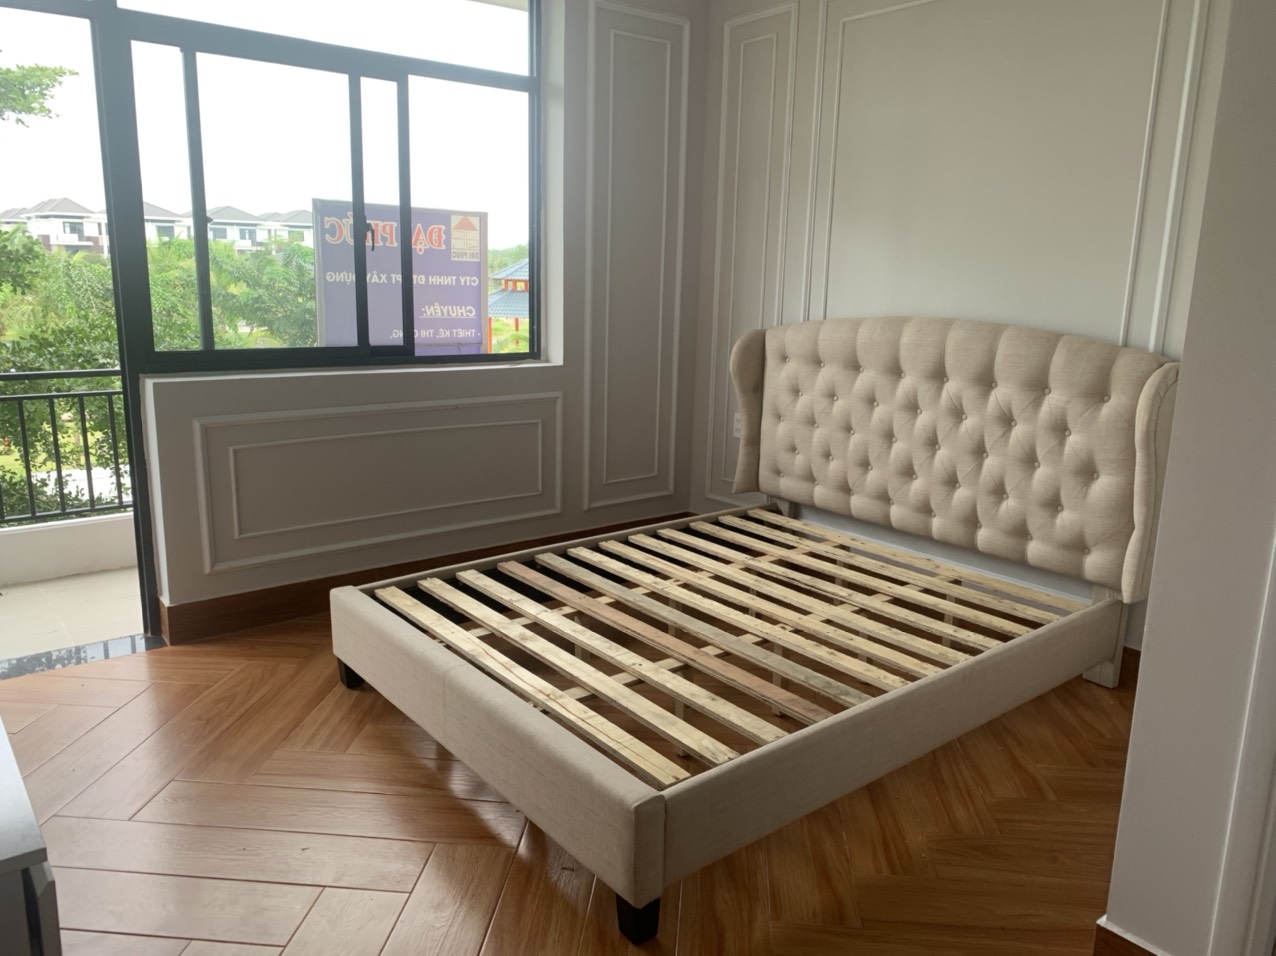 Mua giường ngủ giá rẻ tại Rạch Giá Kiên Giang